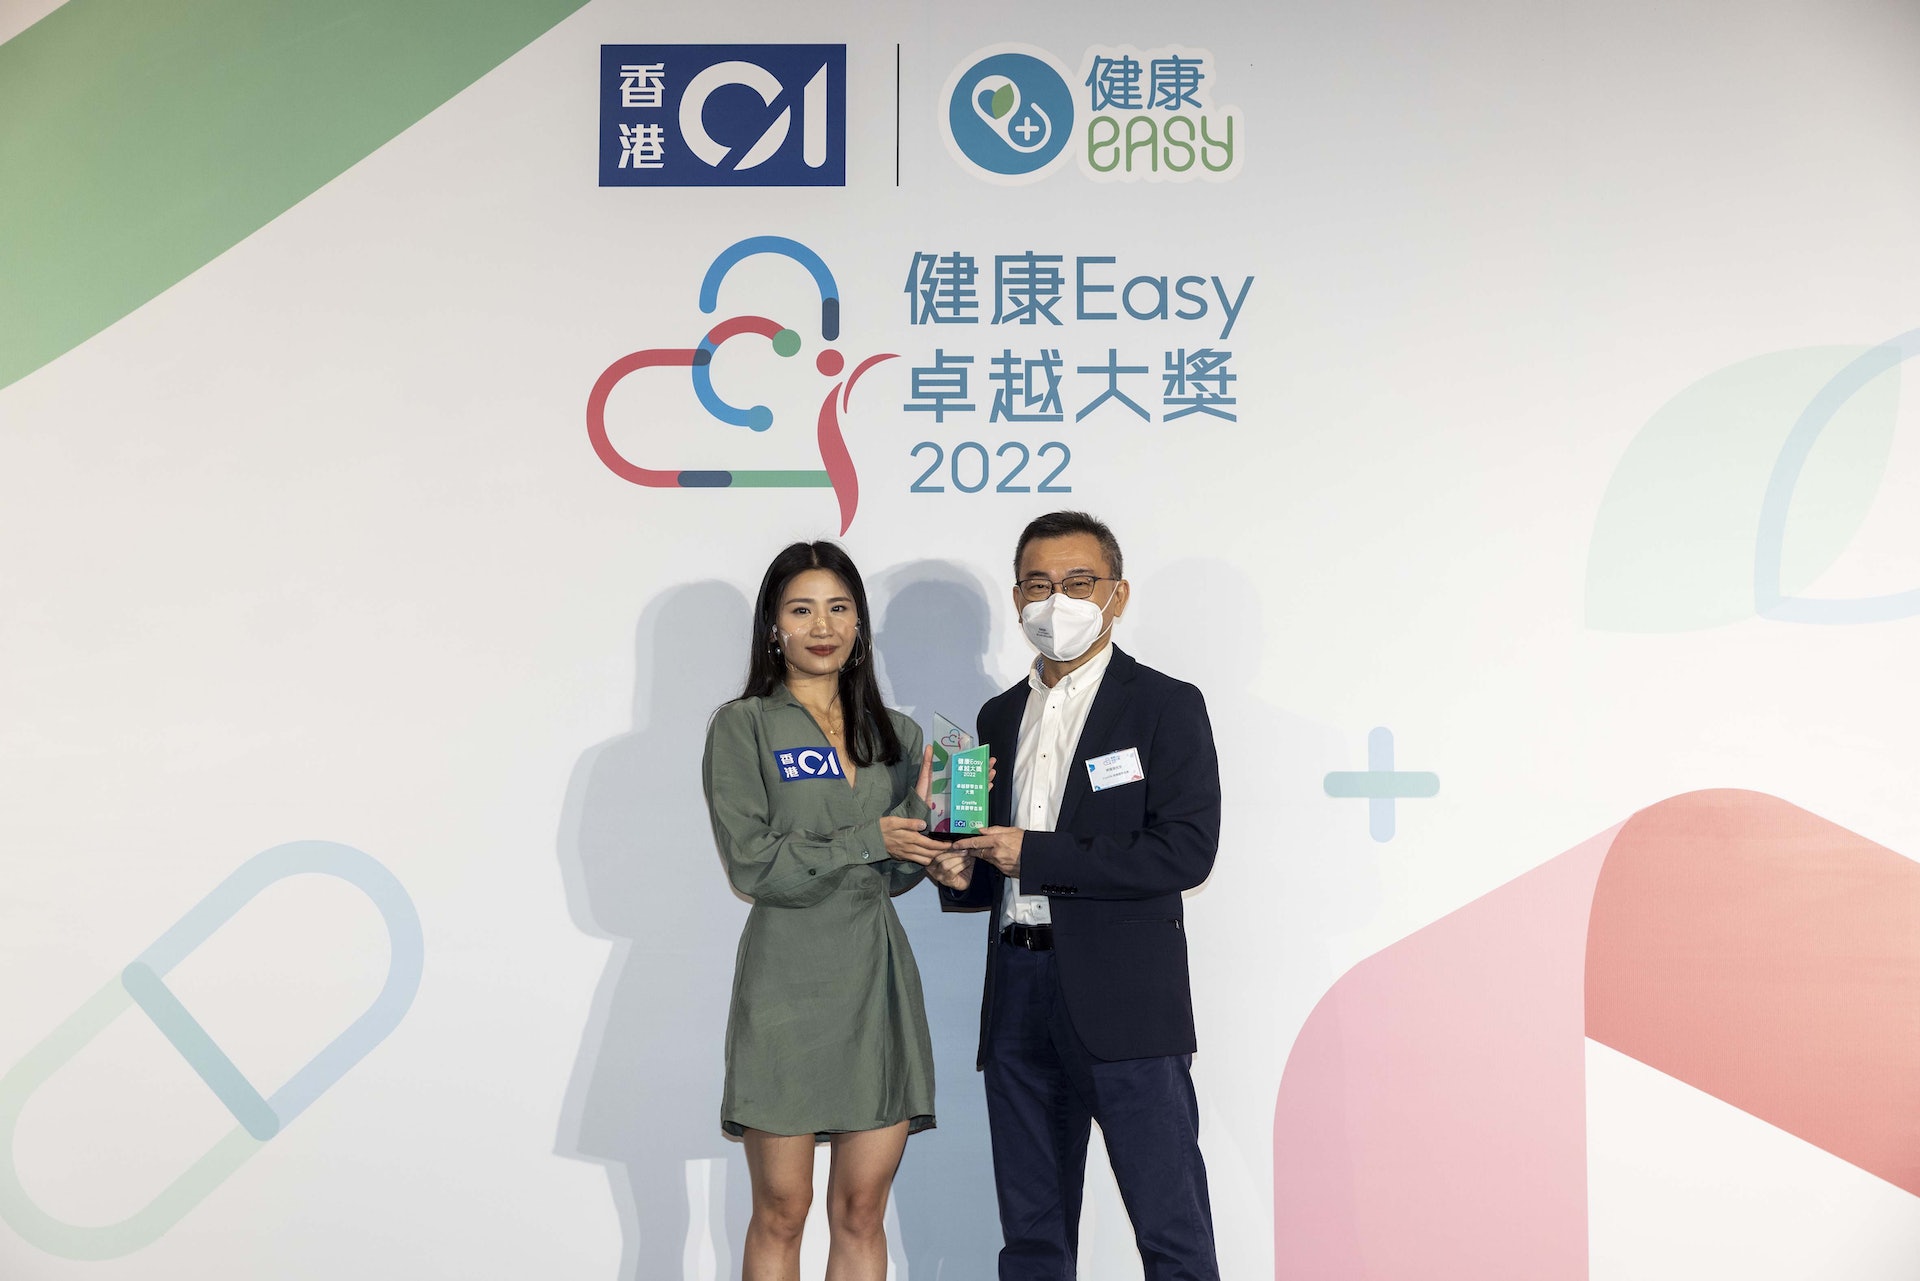 Cryolife於《香港01》舉辦的首屆「健康Easy卓越大獎2022」中獲得 「卓越臍帶血庫大獎」。